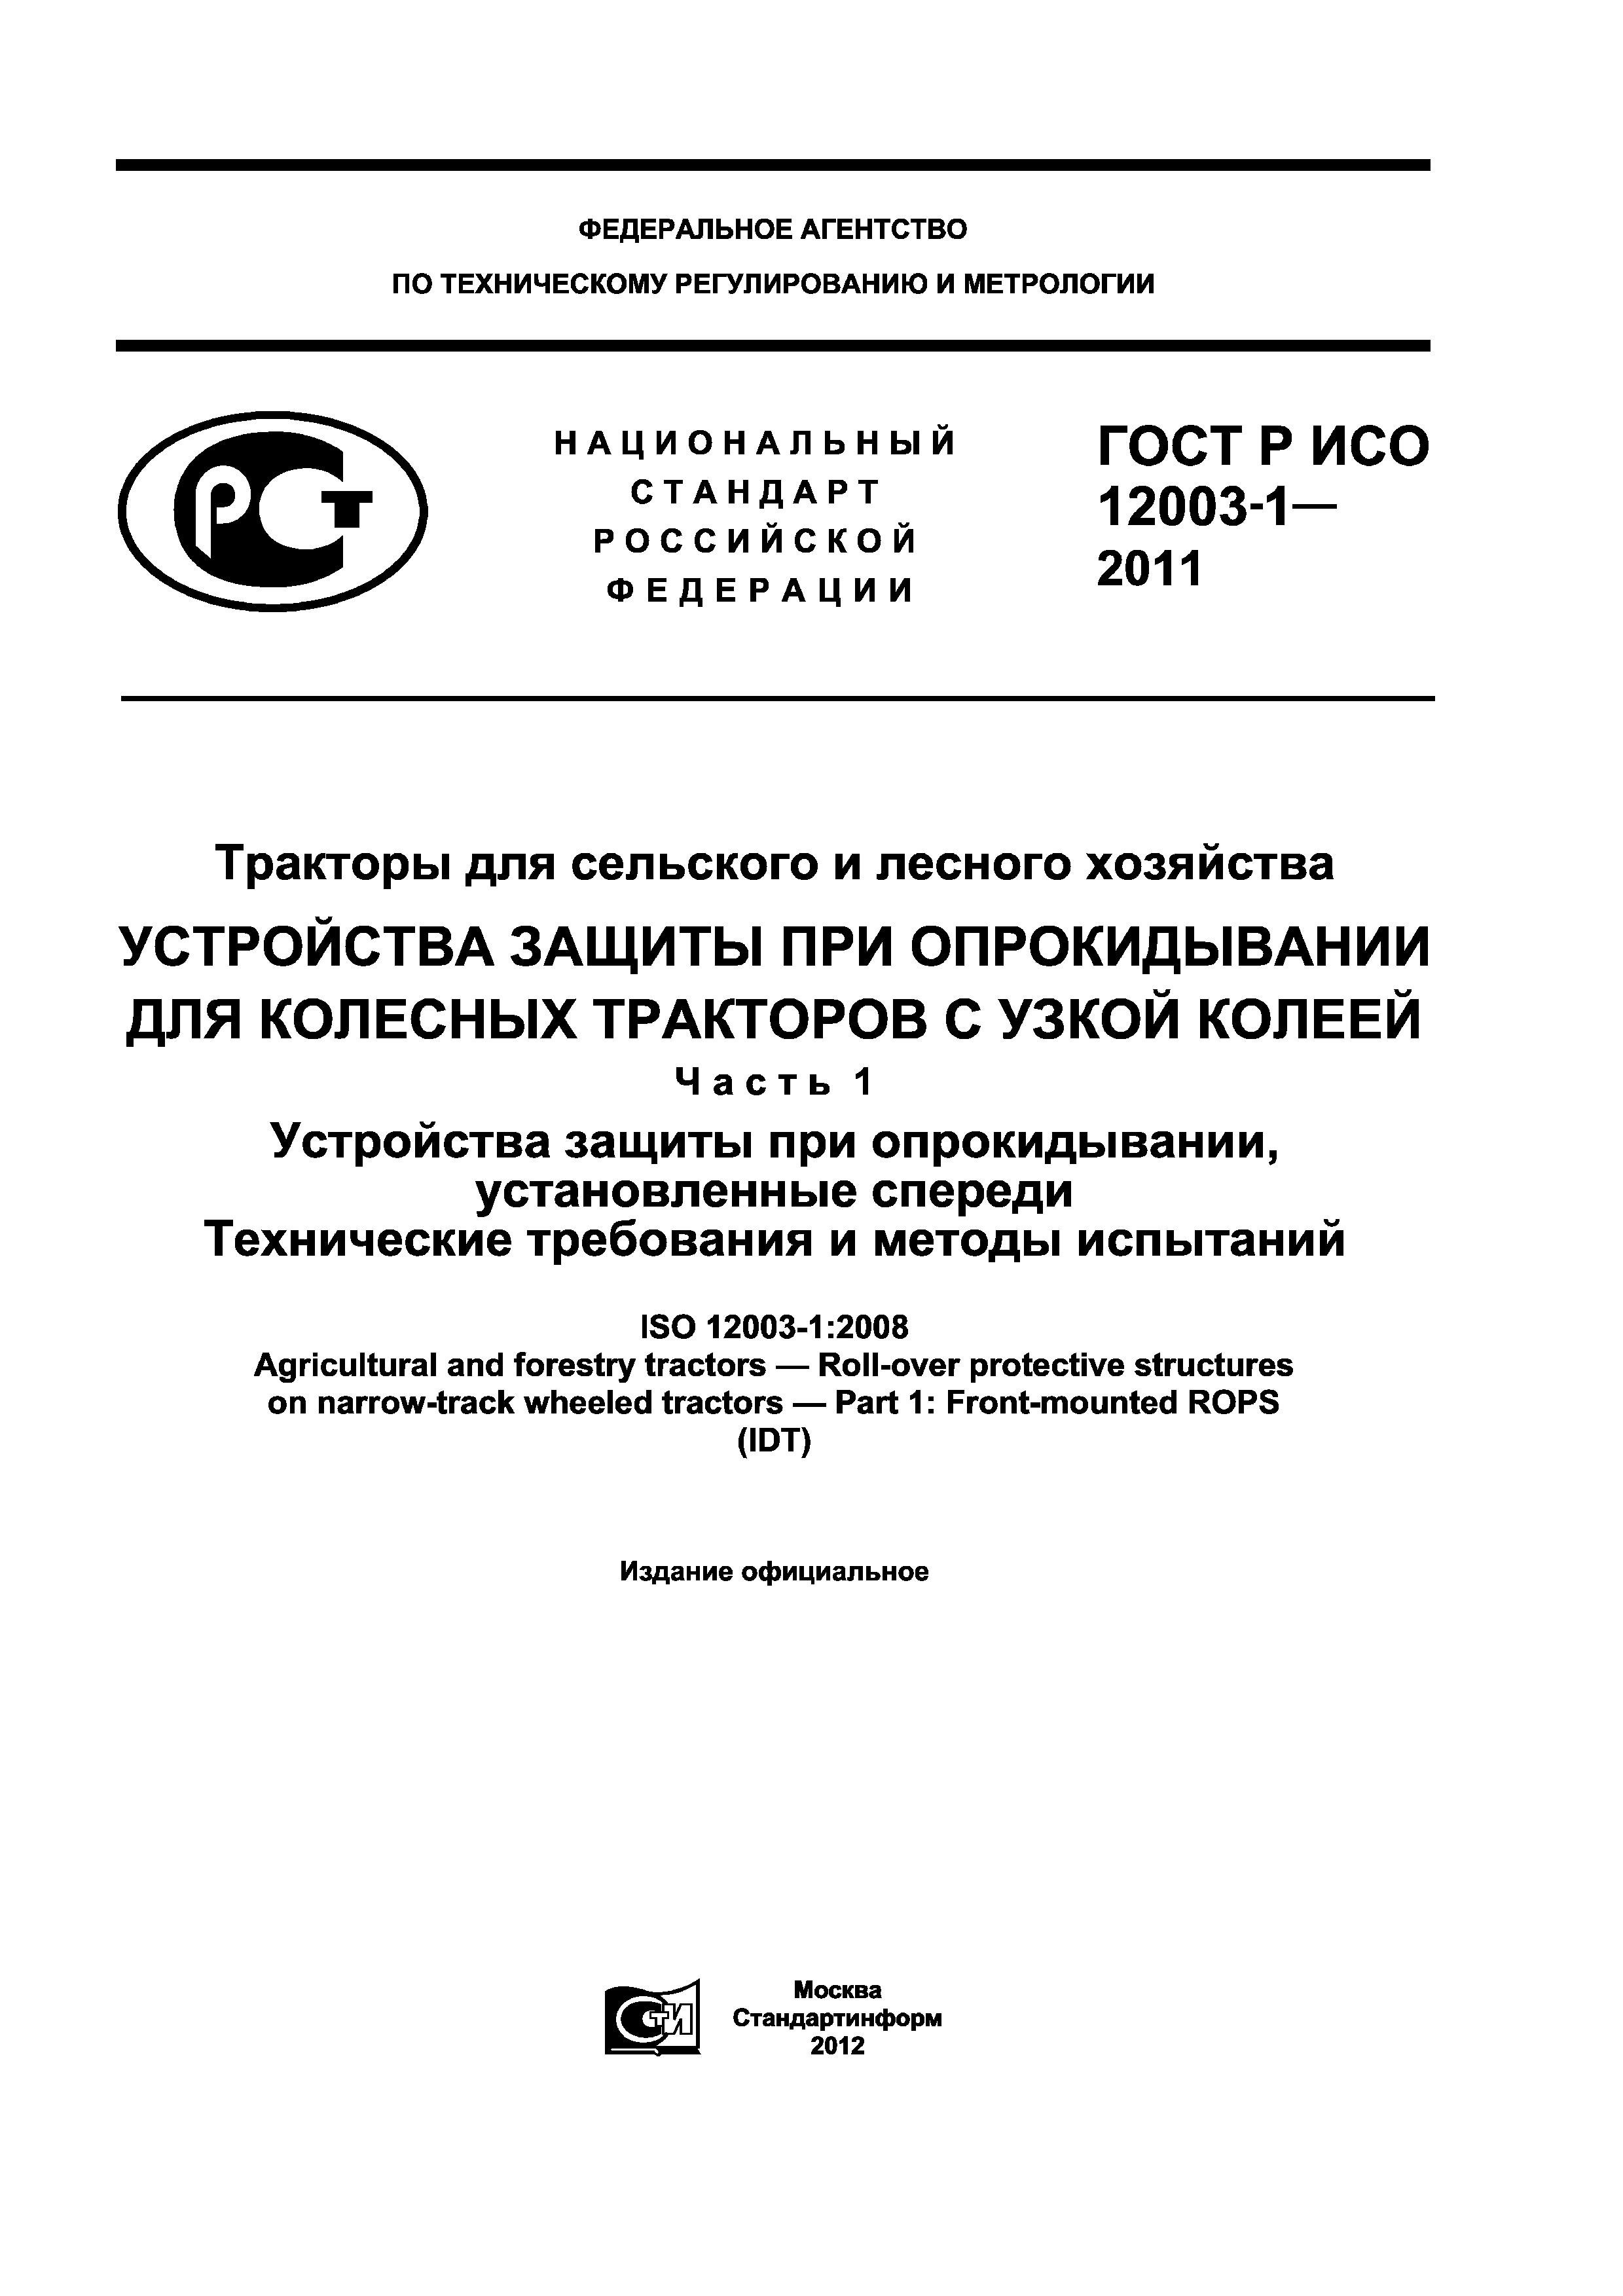 ГОСТ Р ИСО 12003-1-2011